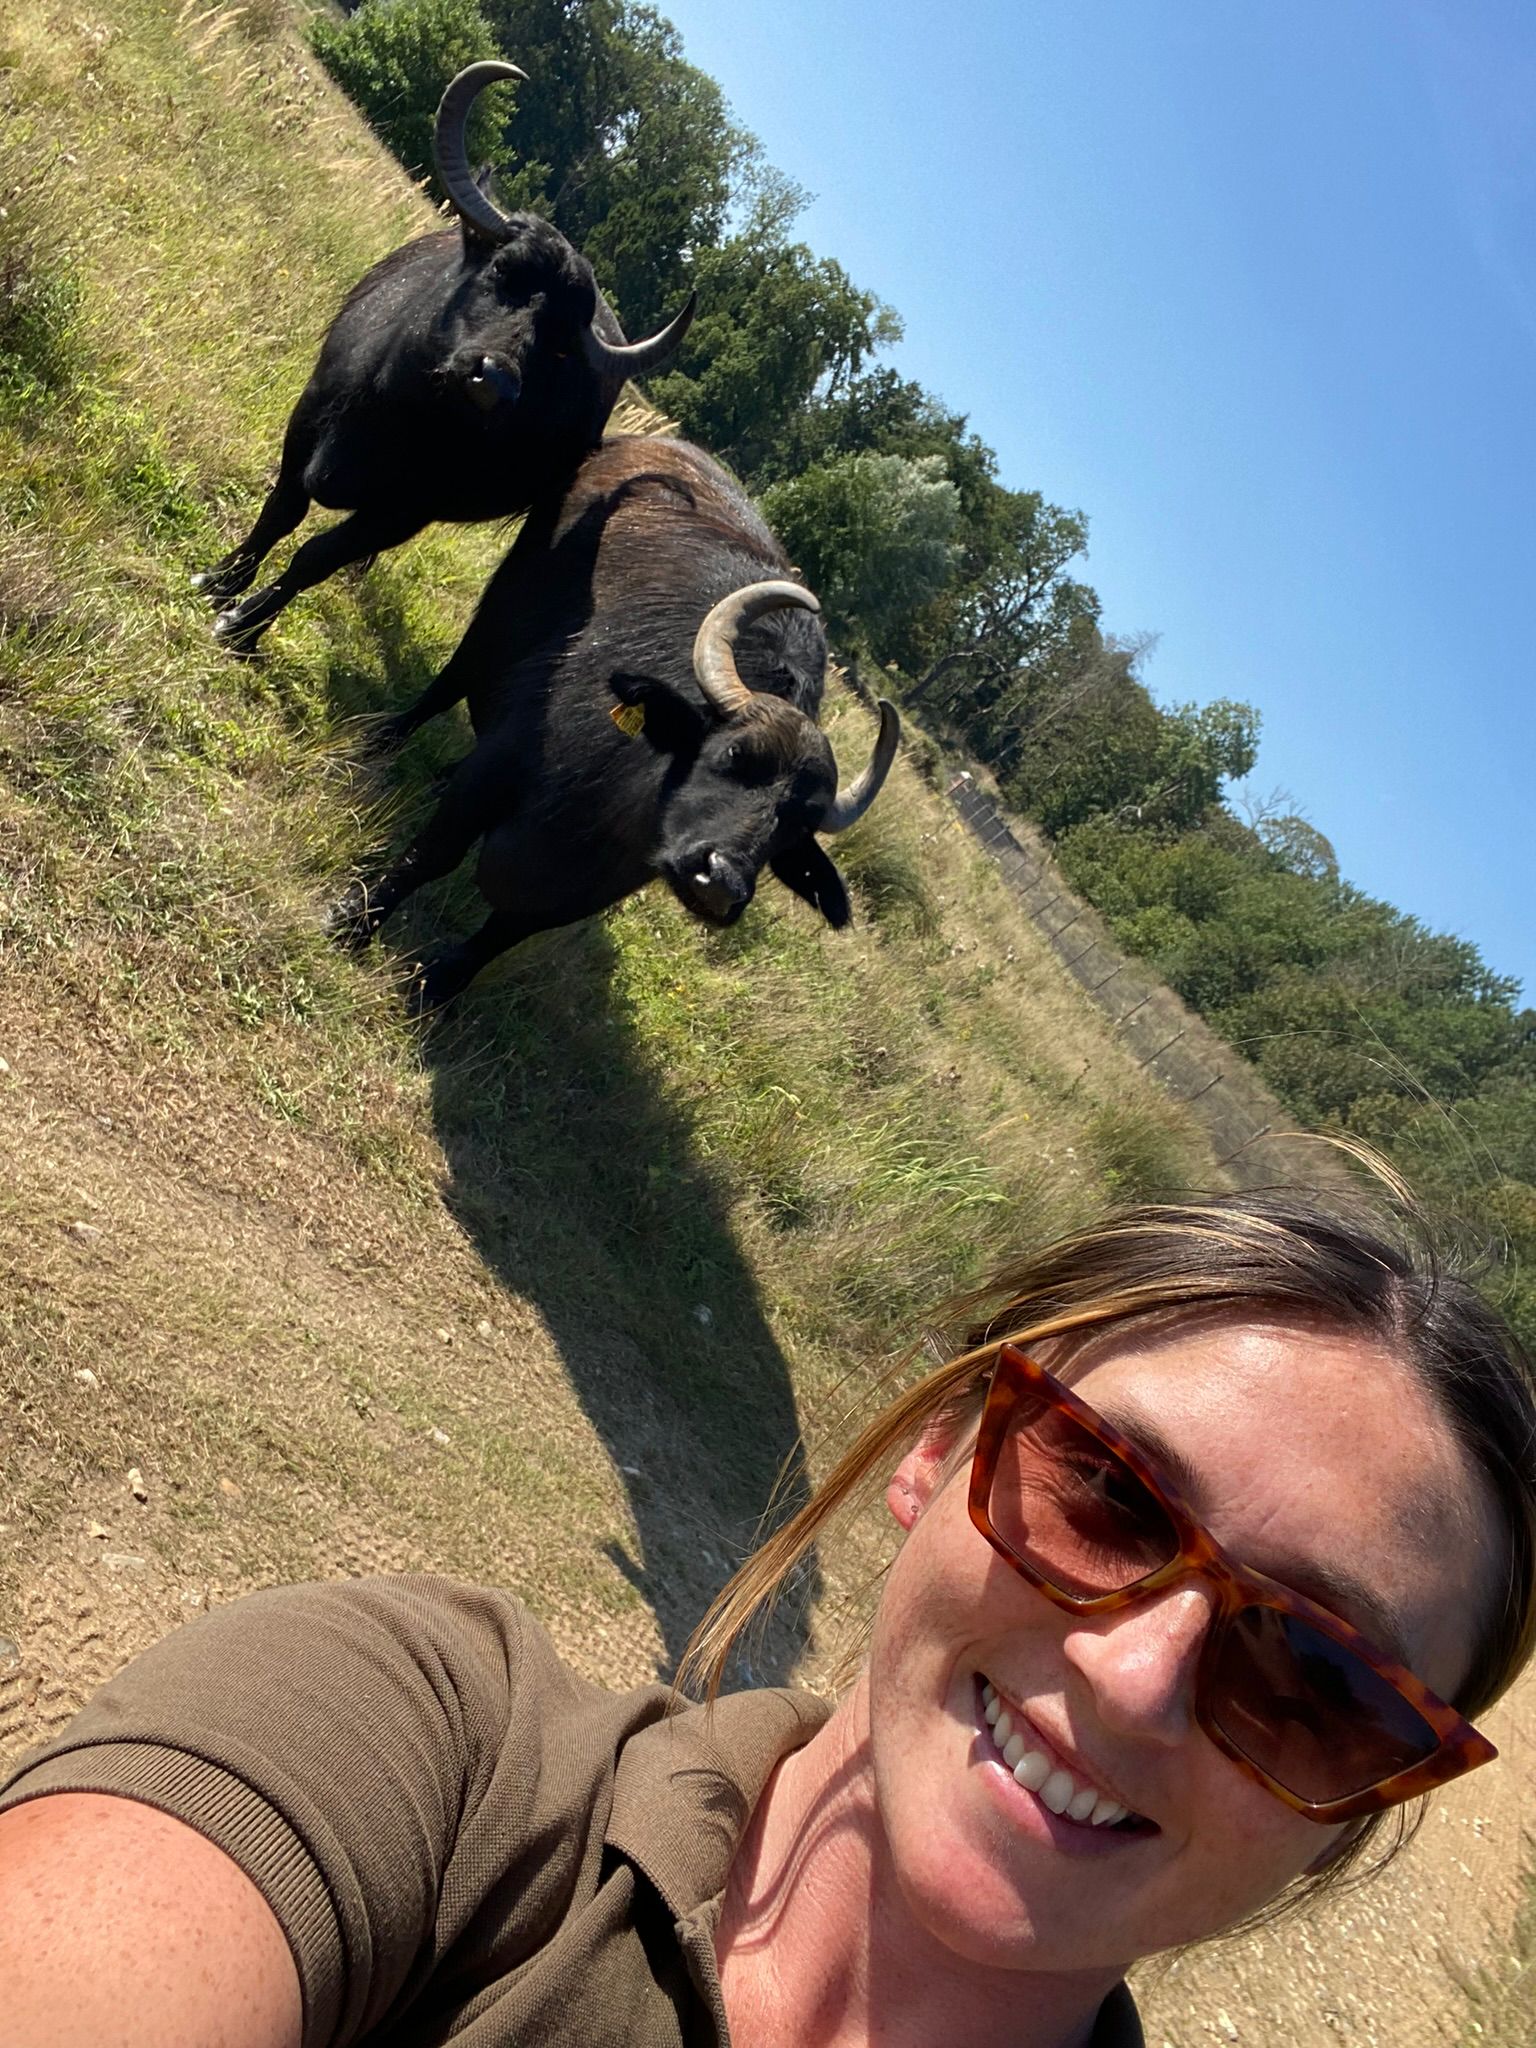 Molly and the Buffalo